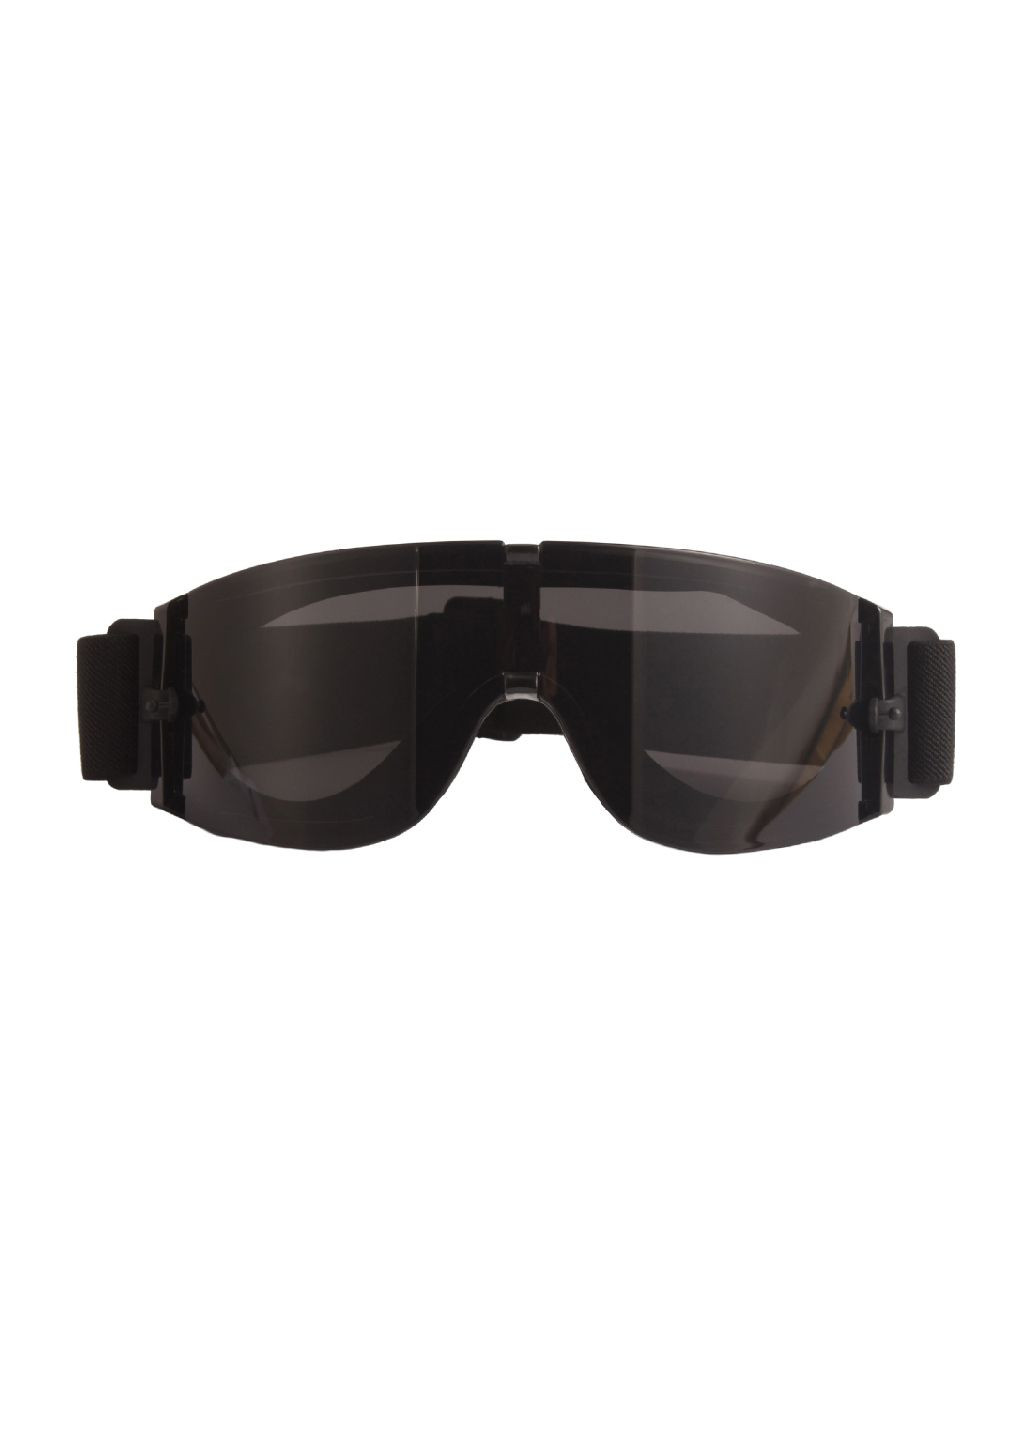 Тактические защитные очки, маска со сменными линзами - Панорамные незапотевающие. Daisy (280826703)